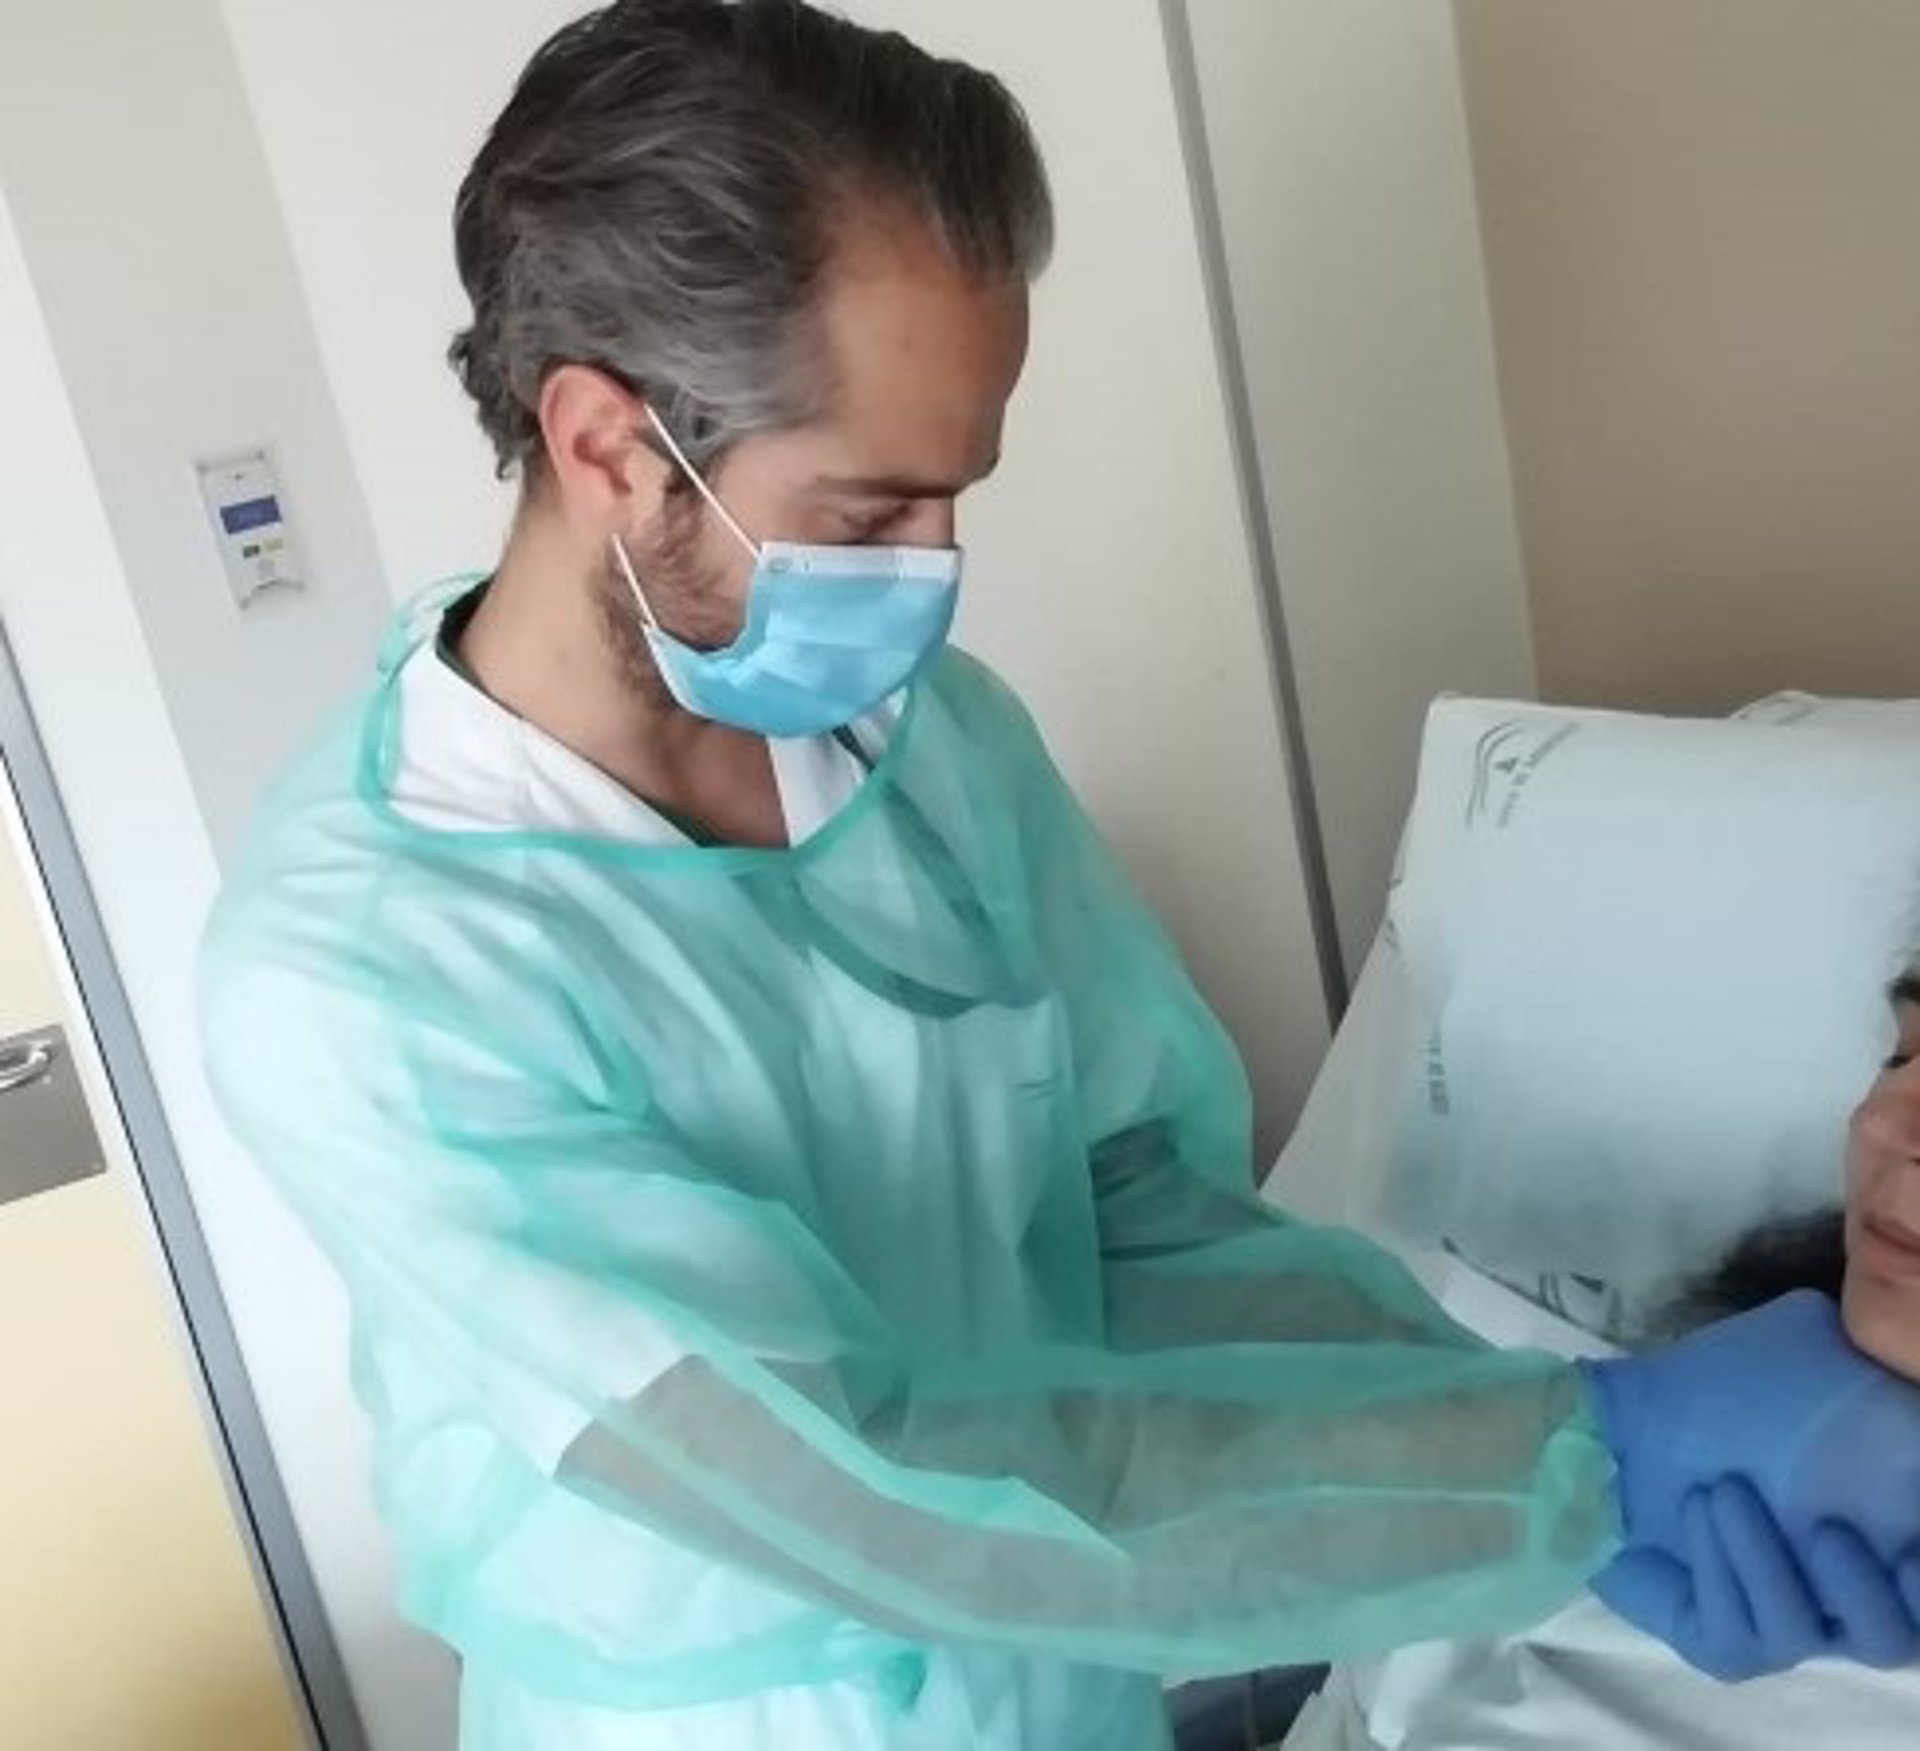 El Hospital Virgen de las Nieves cuenta con una unidad para tratar problemas en la deglución de alimentos